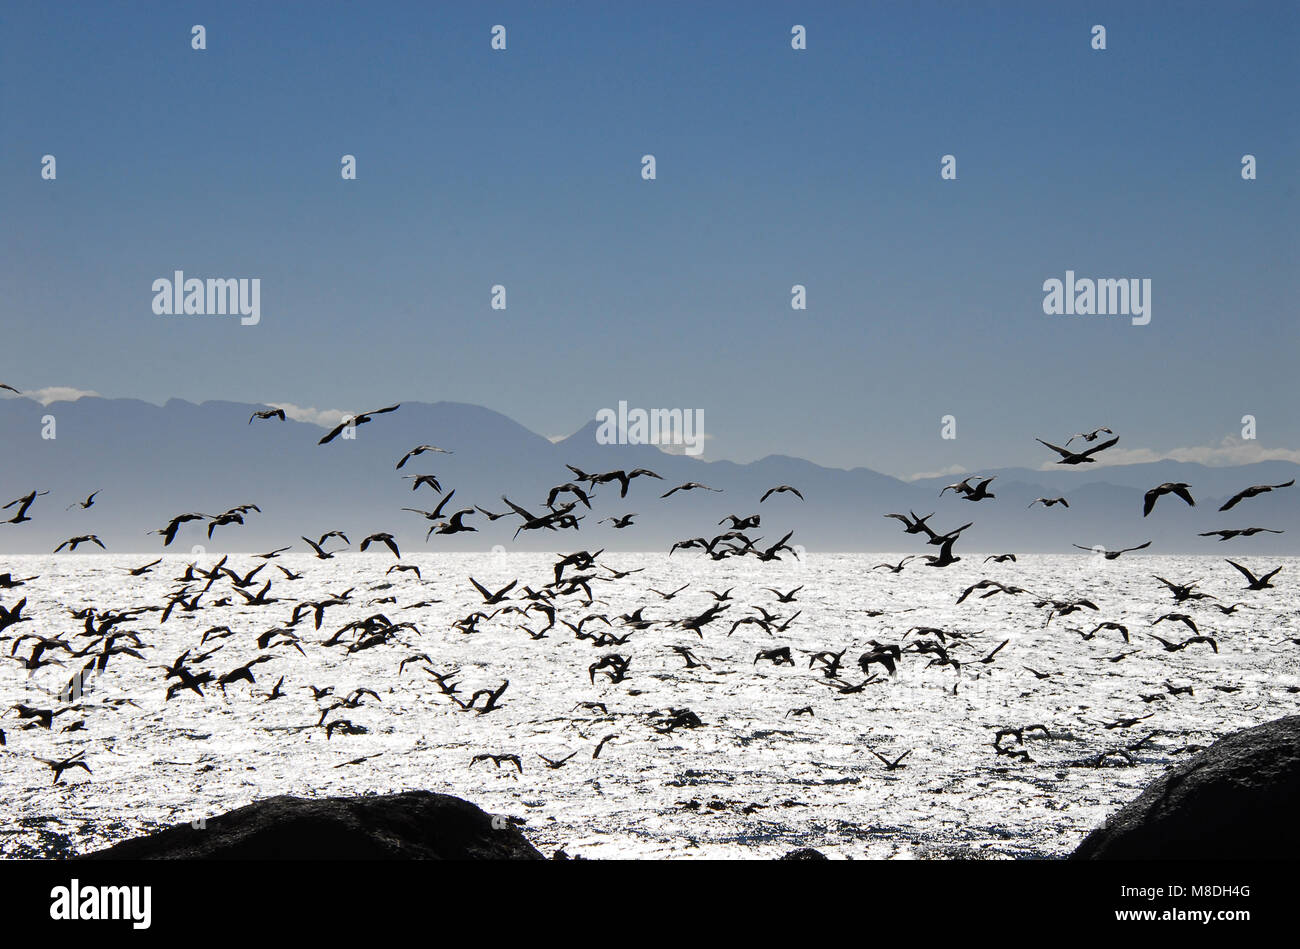 Eine schöne Szene aus einer Vielzahl von Seevögeln im Flug über silbrig False Bay, in Südafrika, erstellt einen wunderbaren Hintergrund. Stockfoto